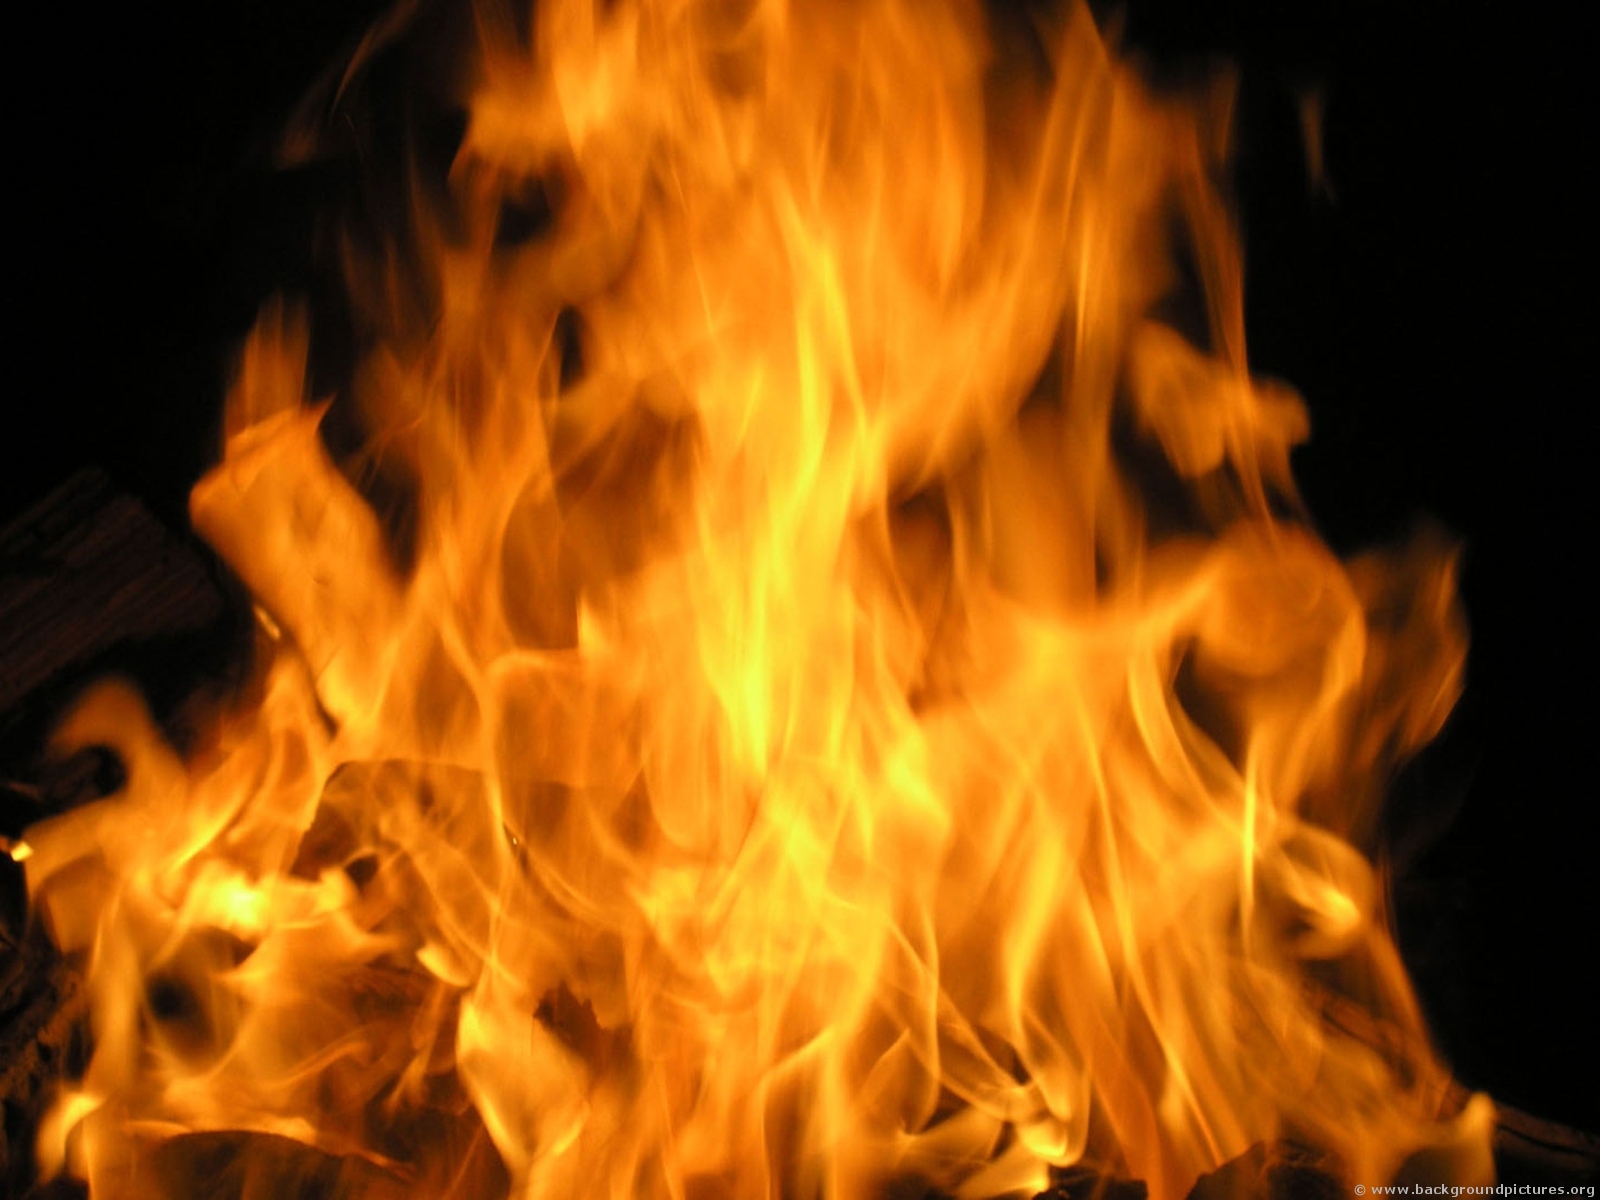 Београд: Жена се полила бензином и запалила